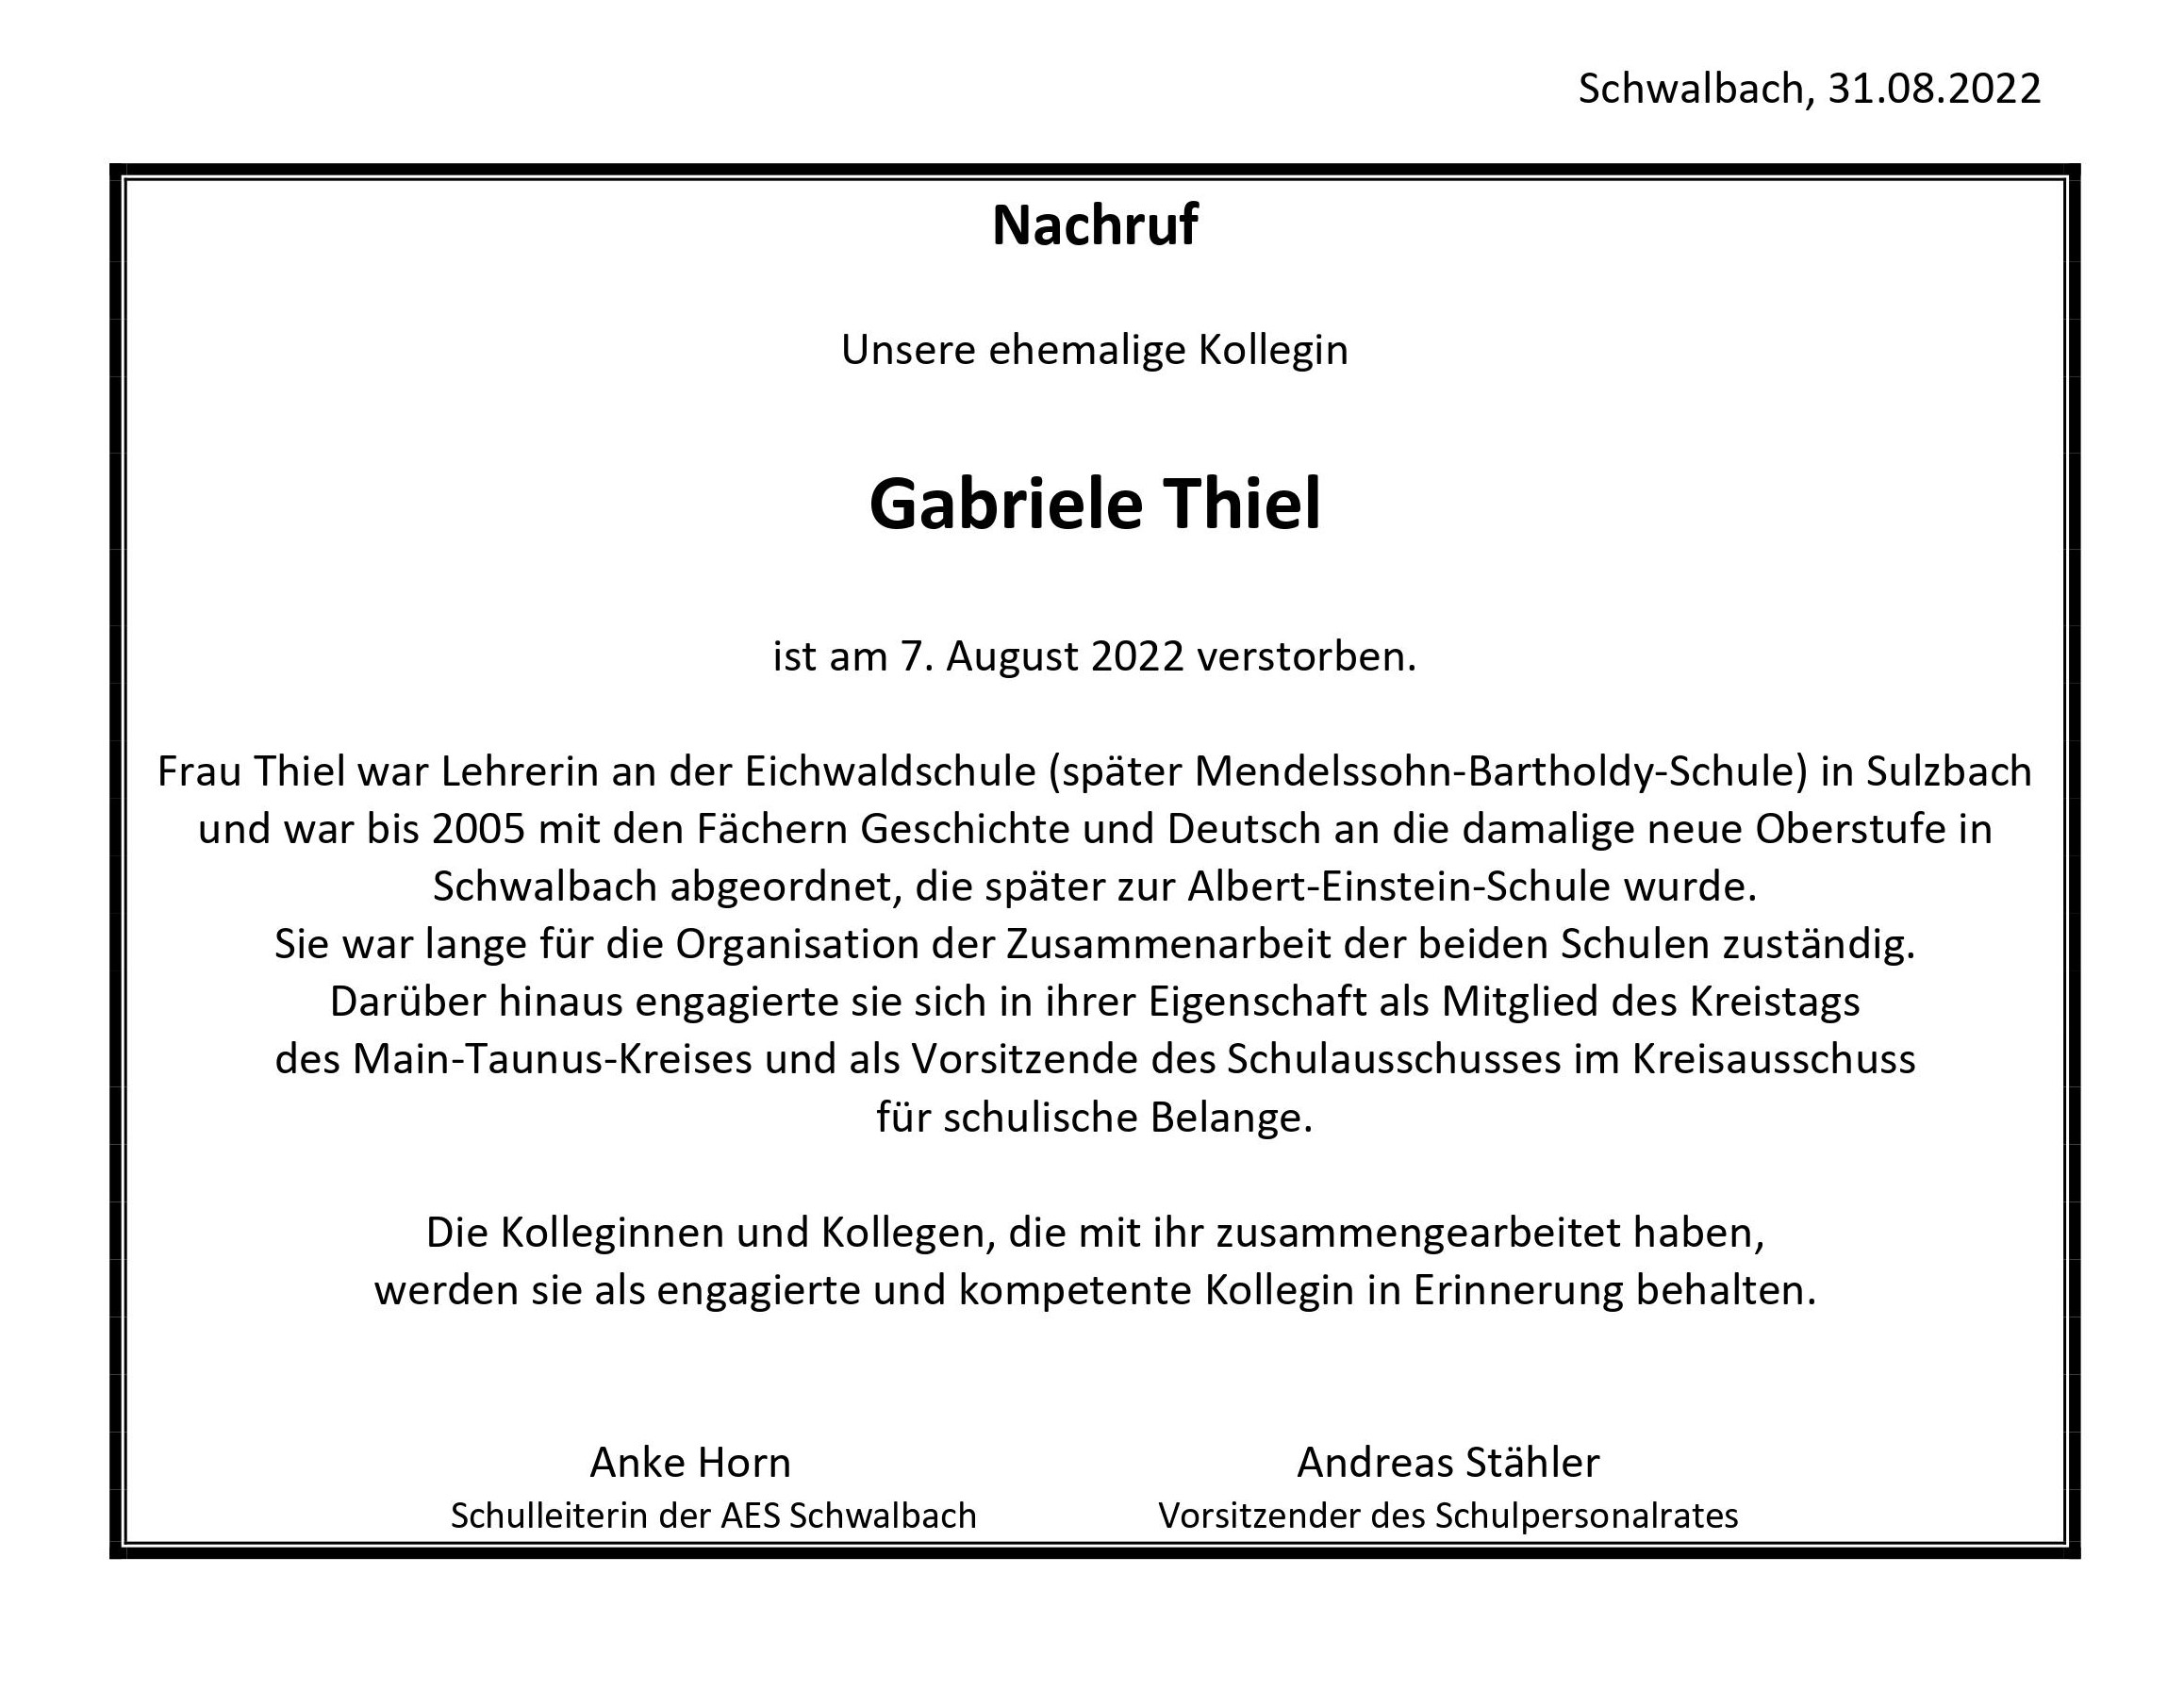 22 08 31 Nachruf Gabriele Thiel